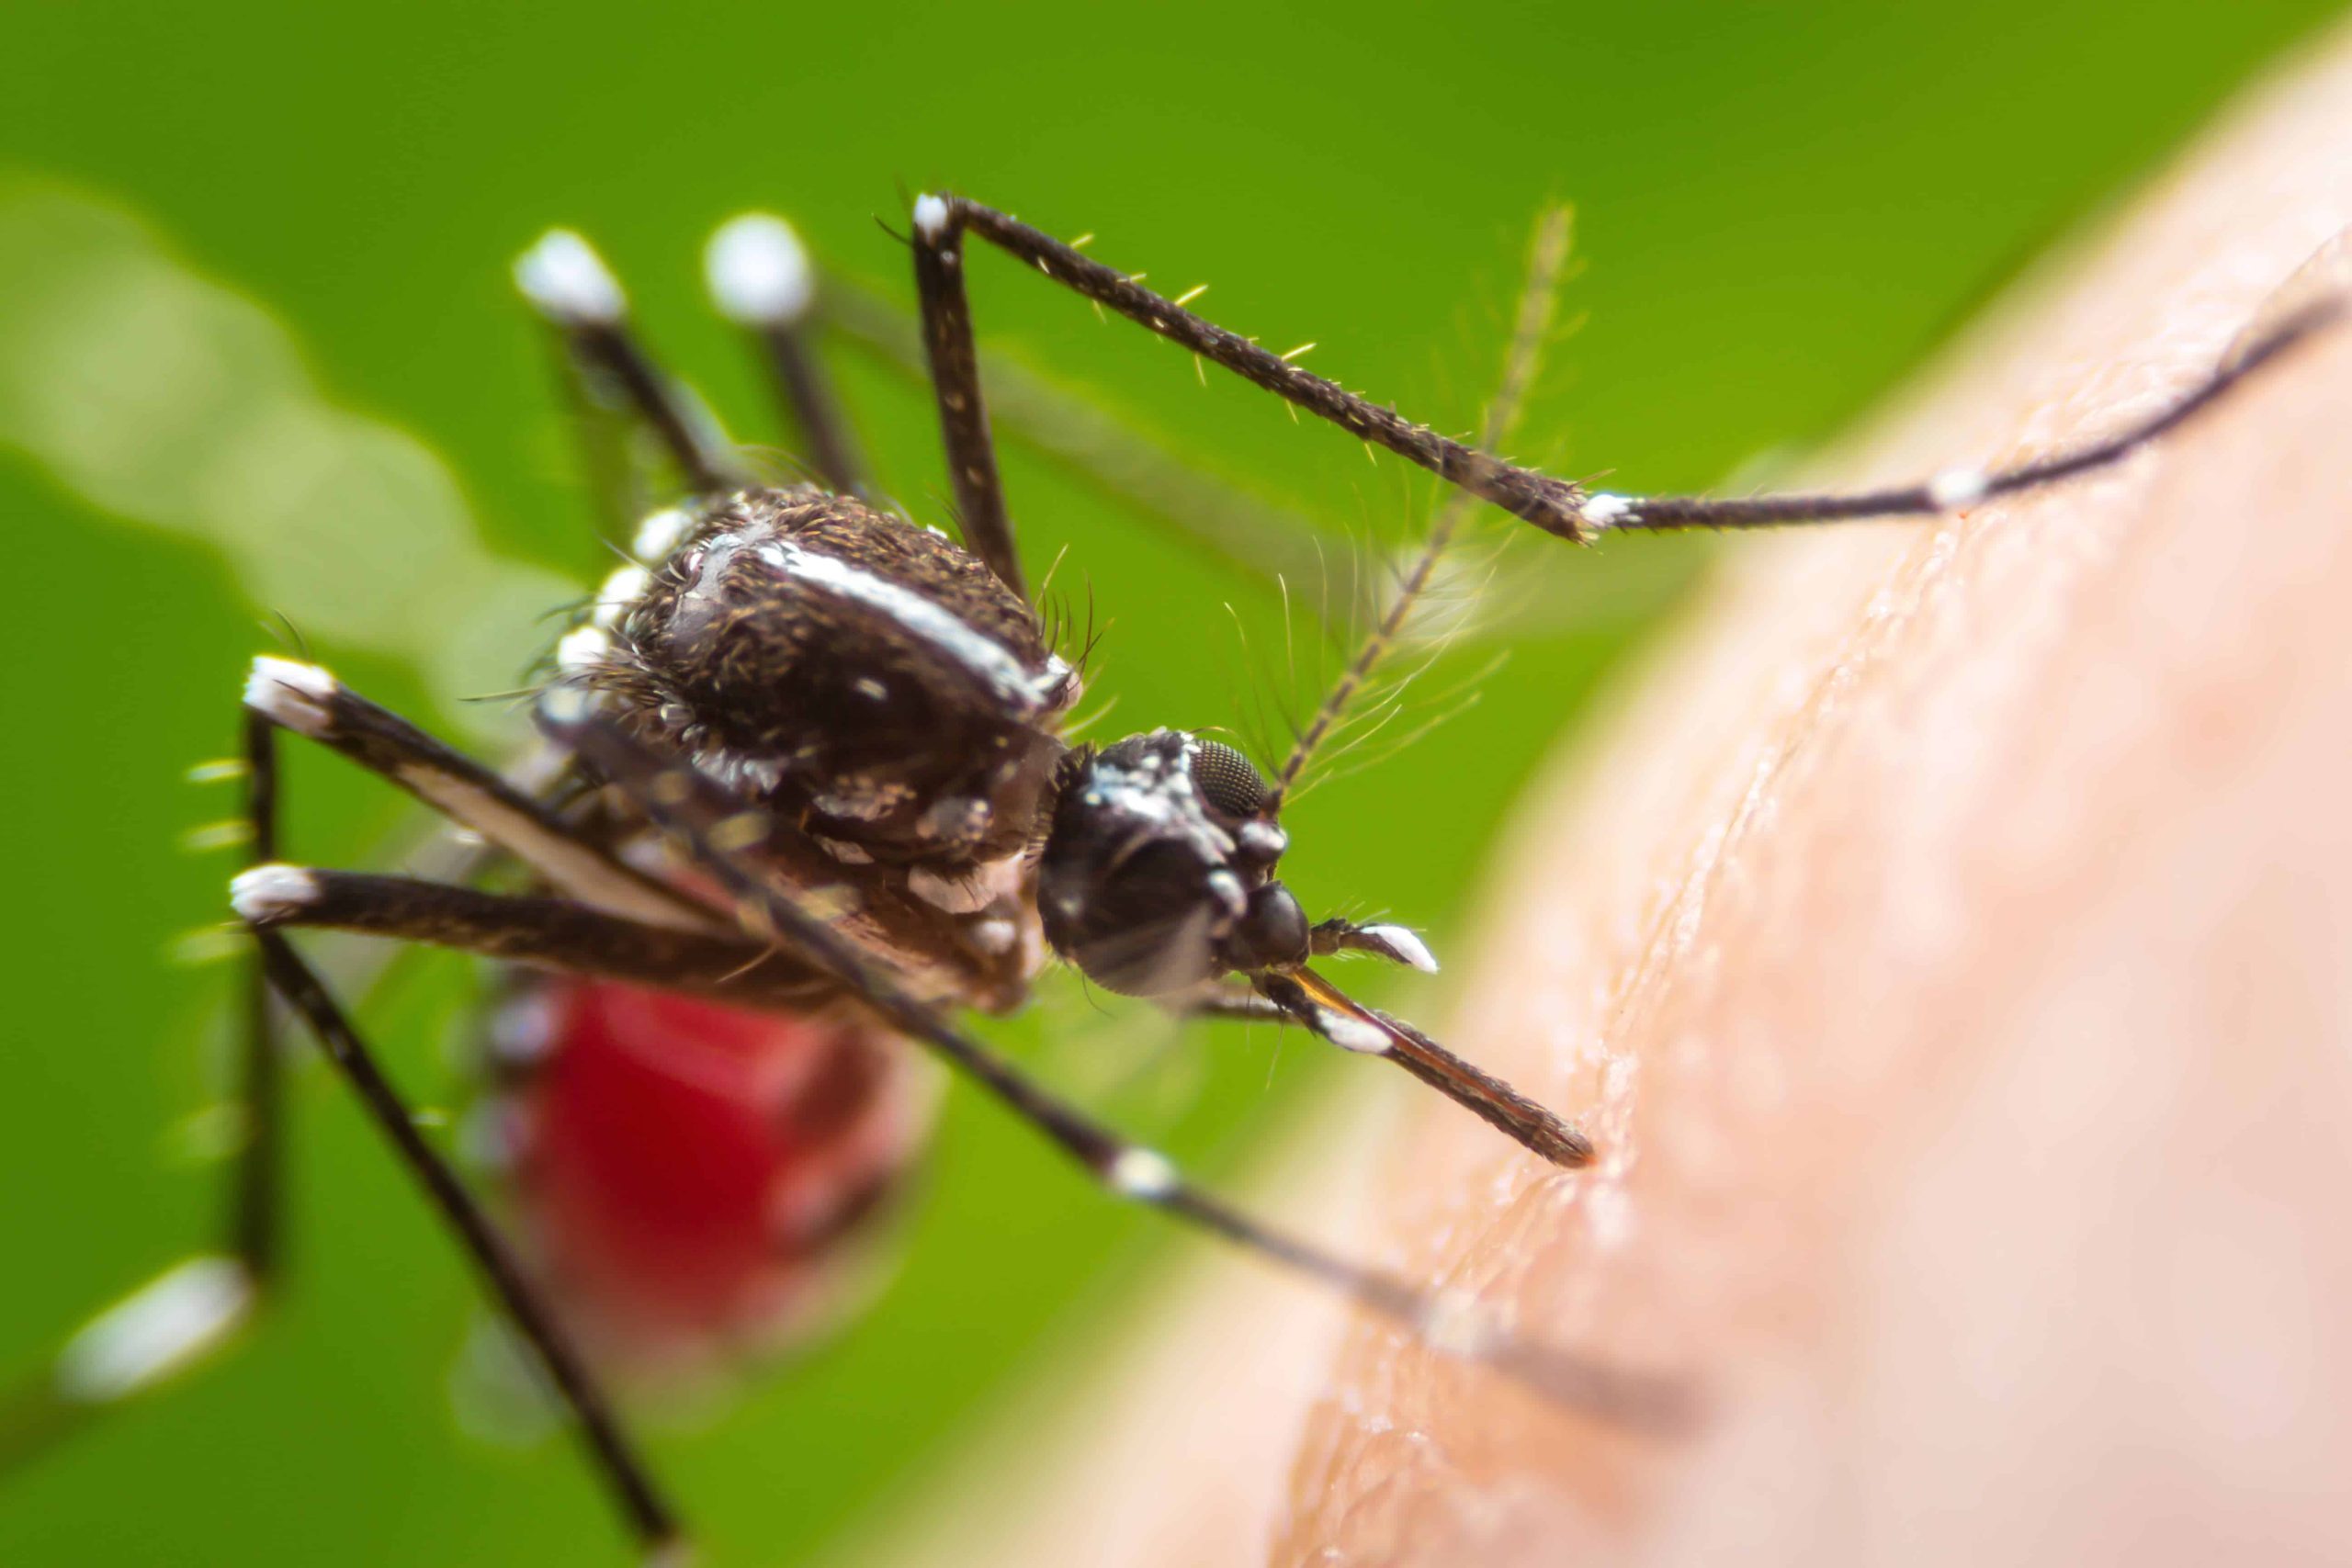 Hallan que el Aedes aegypti se adapta a temperaturas locales en medio de crisis climática